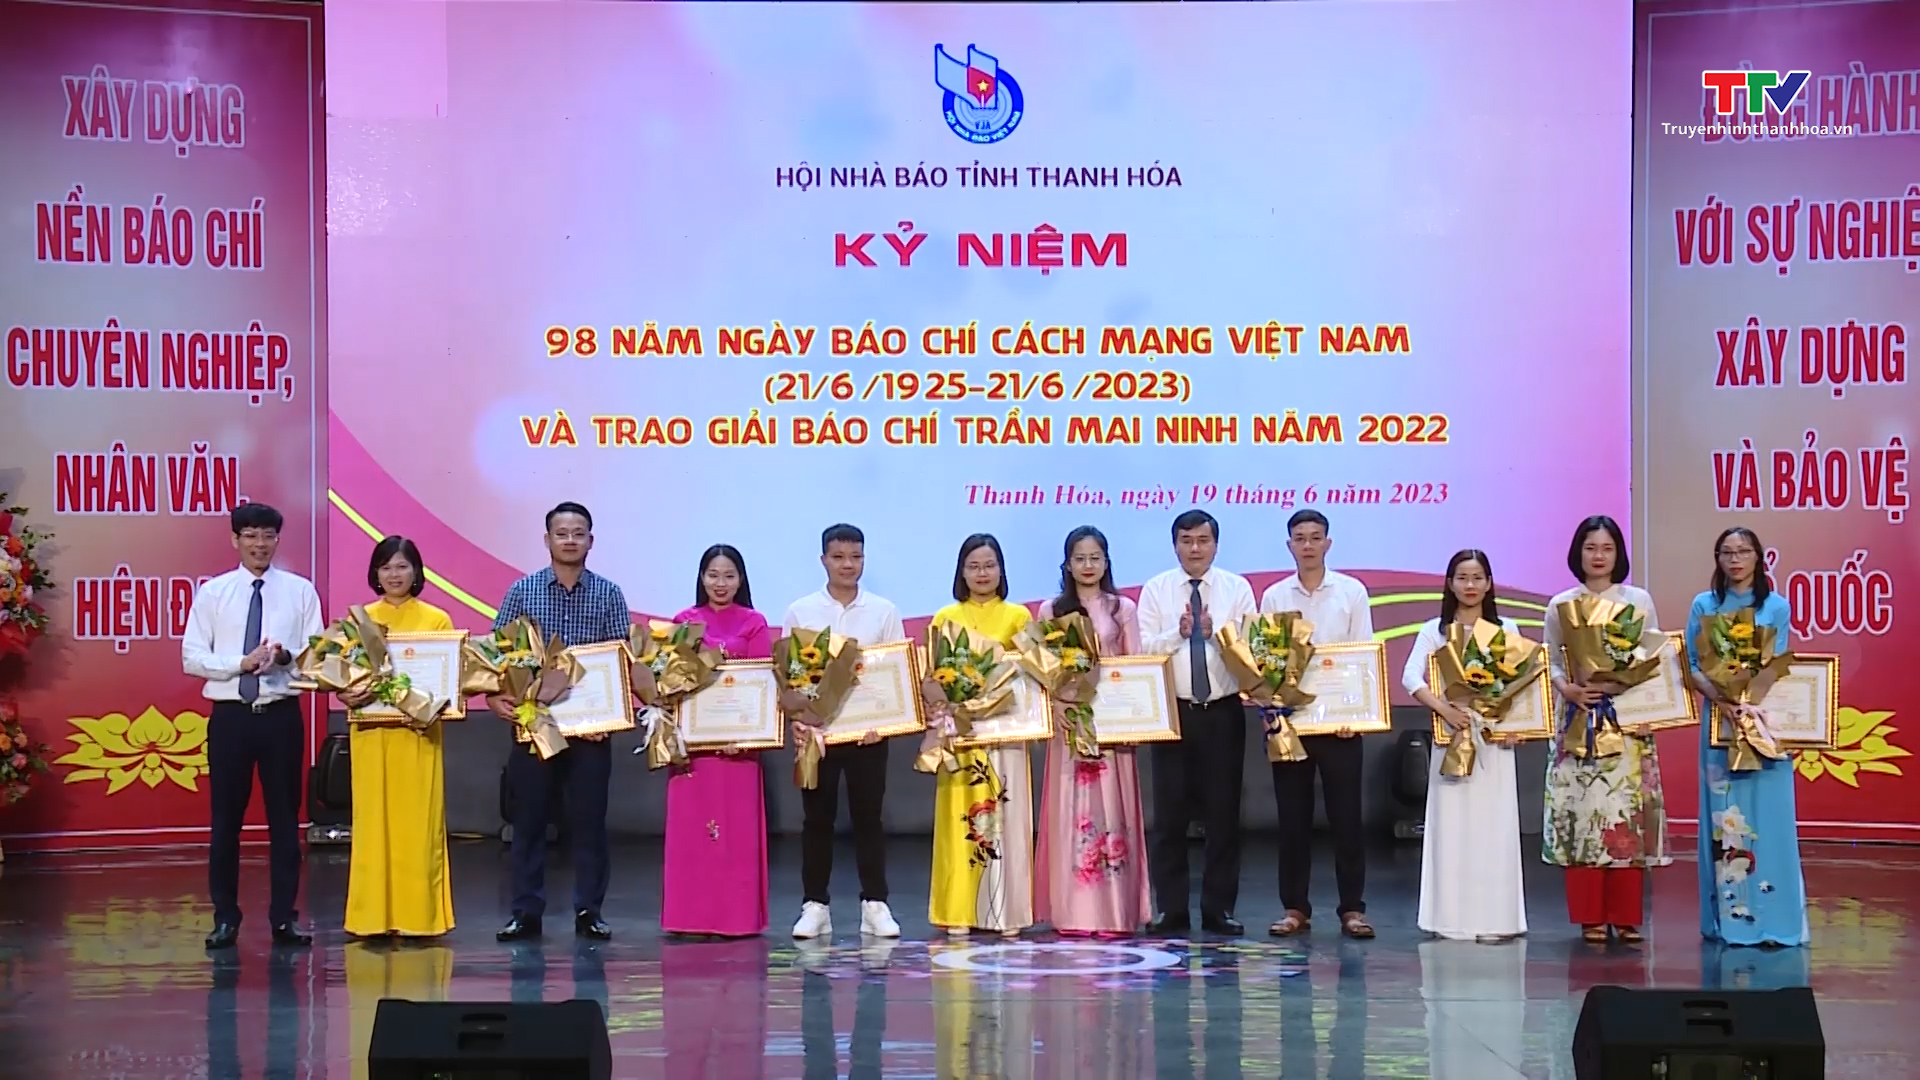 Kỷ niệm 98 năm Ngày báo chí cách mạng Việt Nam và trao giải báo chí Trần Mai Ninh năm 2022 - Ảnh 4.